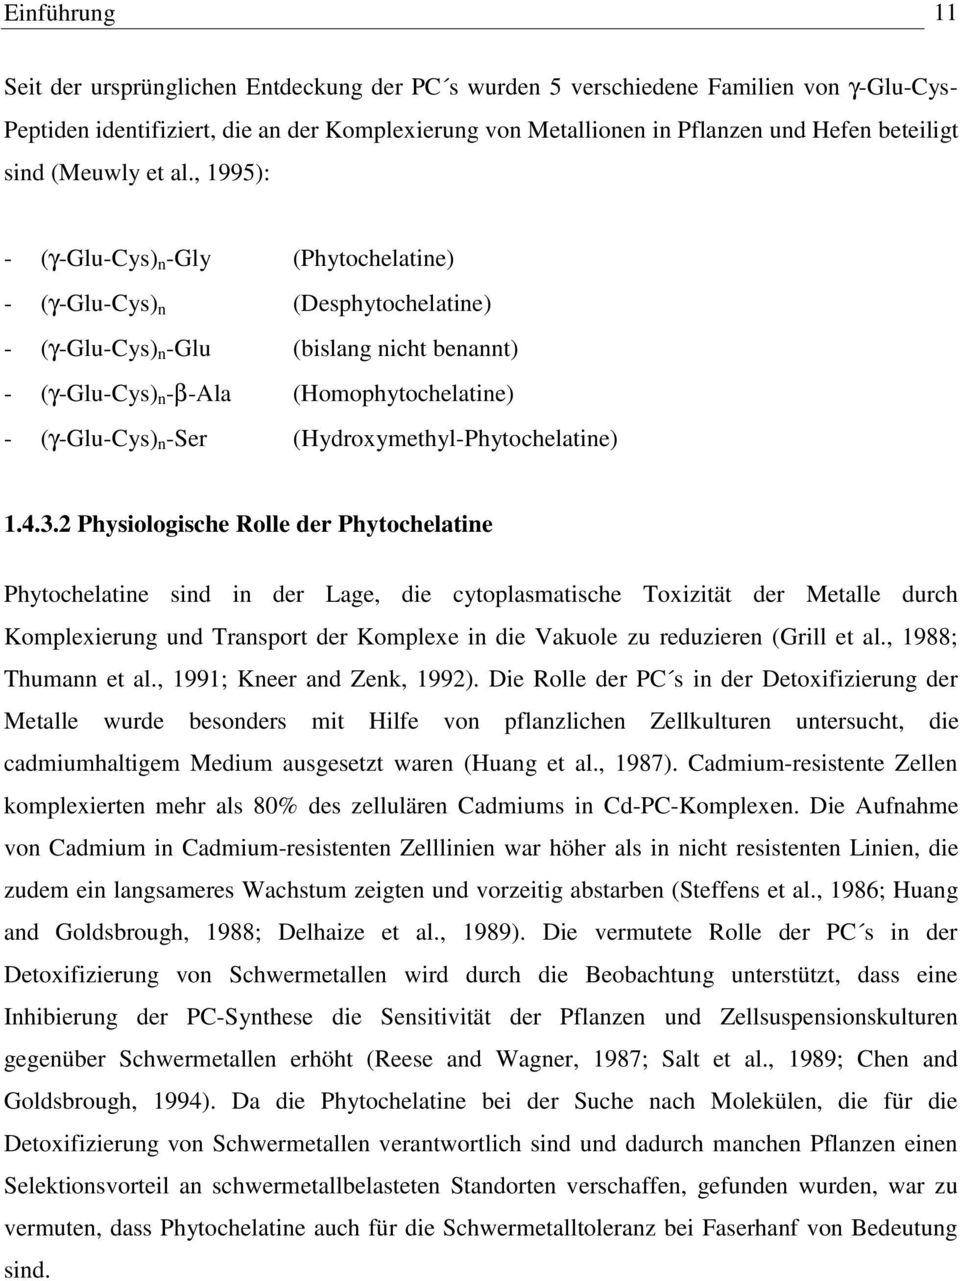 , 1995): - (γ-glu-cys) n -Gly (Phytochelatine) - (γ-glu-cys) n (Desphytochelatine) - (γ-glu-cys) n -Glu (bislang nicht benannt) - (γ-glu-cys) n -β-ala (Homophytochelatine) - (γ-glu-cys) n -Ser